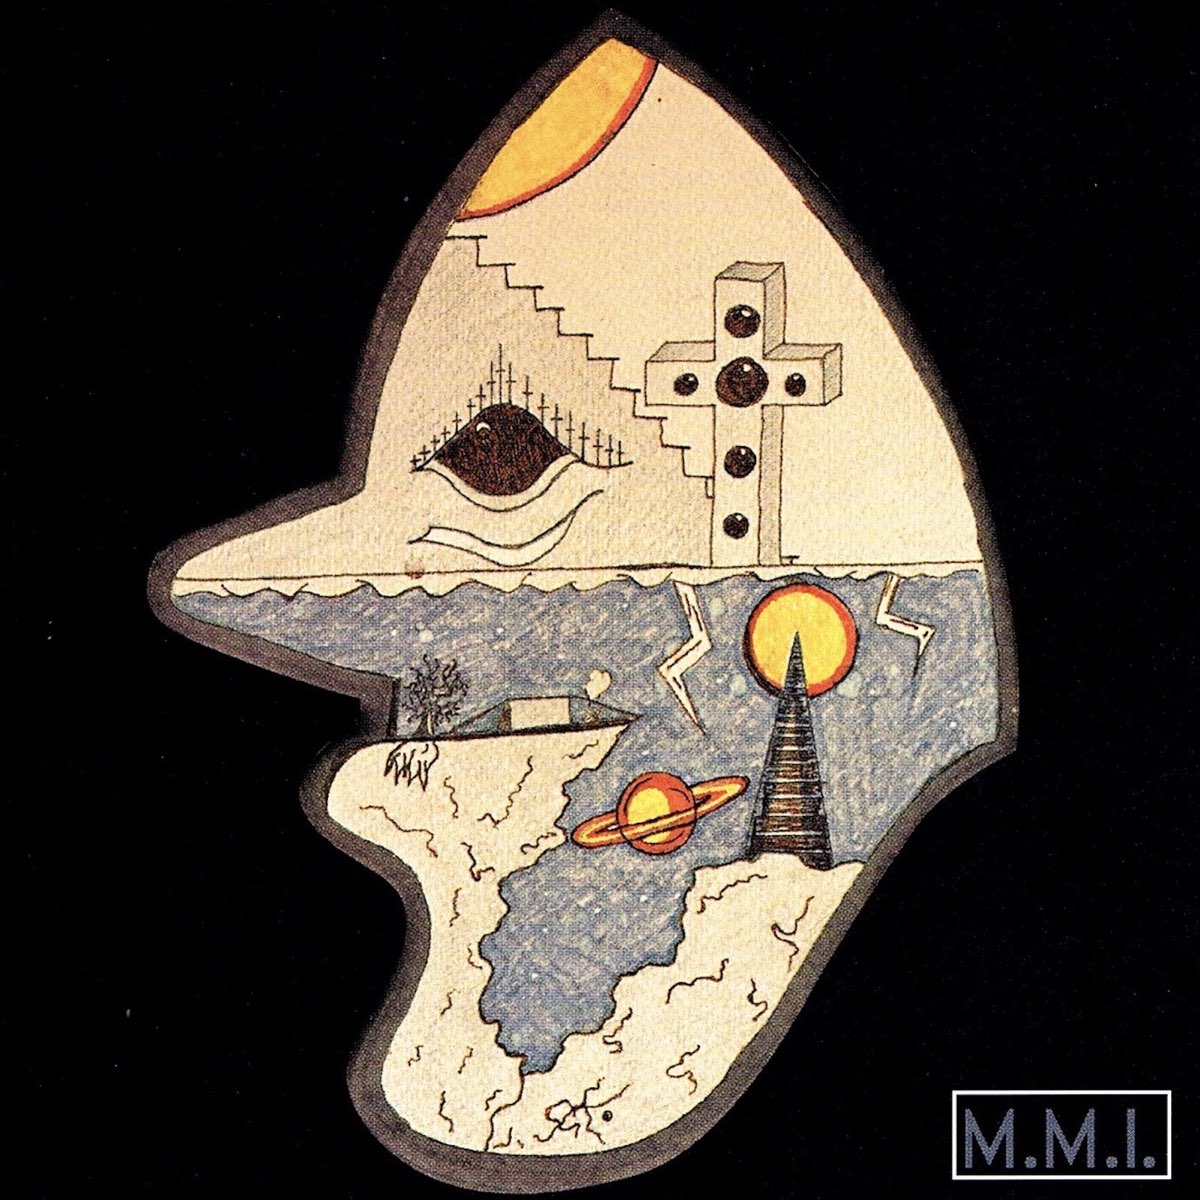 Sean Lafontaine "M.M.I." album artwork